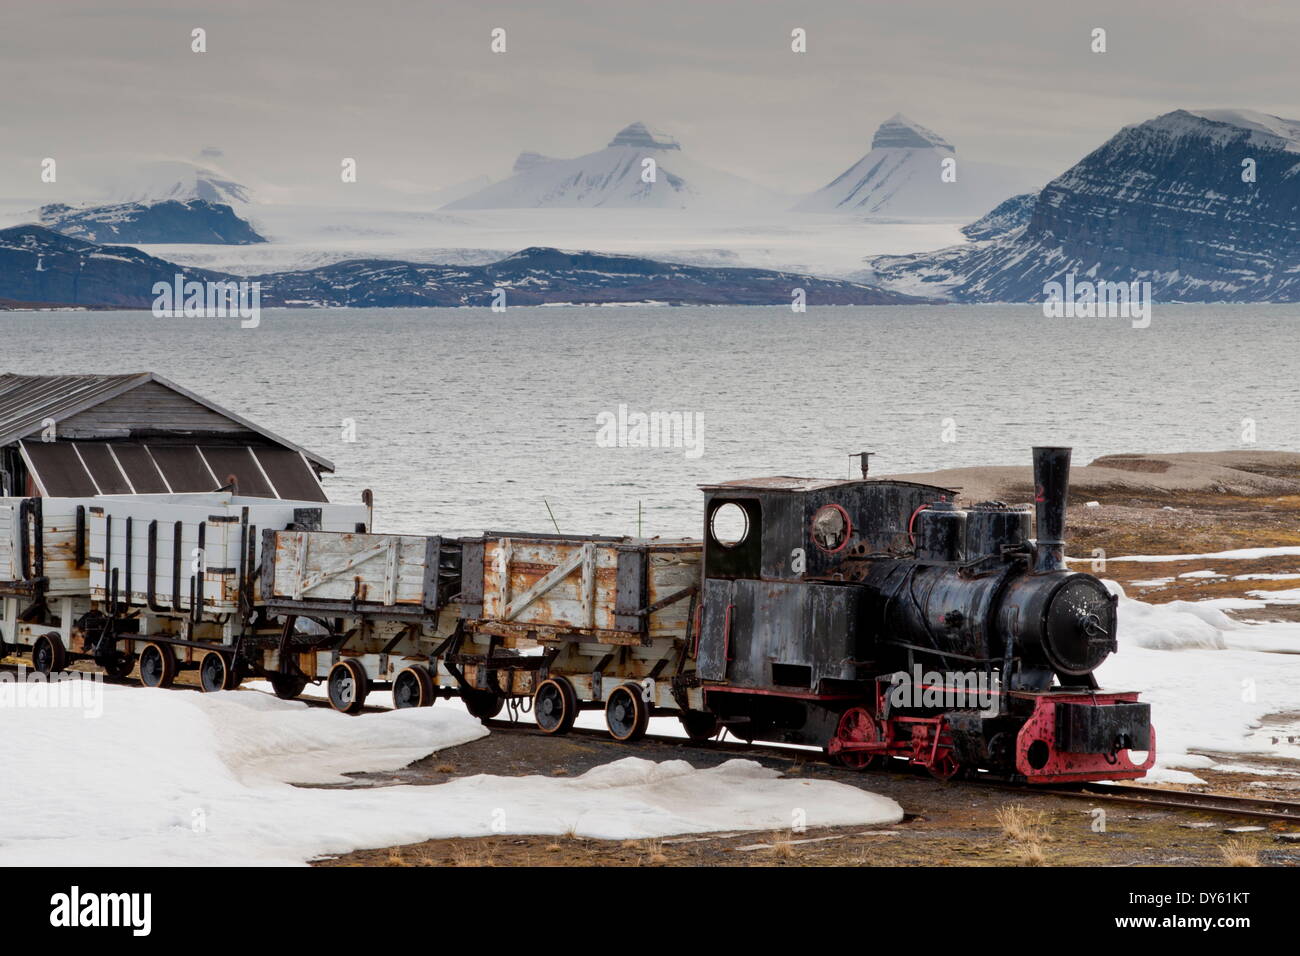 Vieux train de charbon avec snow, fjord et montagnes, Ny Alesund, Spitzberg (Svalbard), l'Arctique, Norway, Scandinavia, Europe Banque D'Images